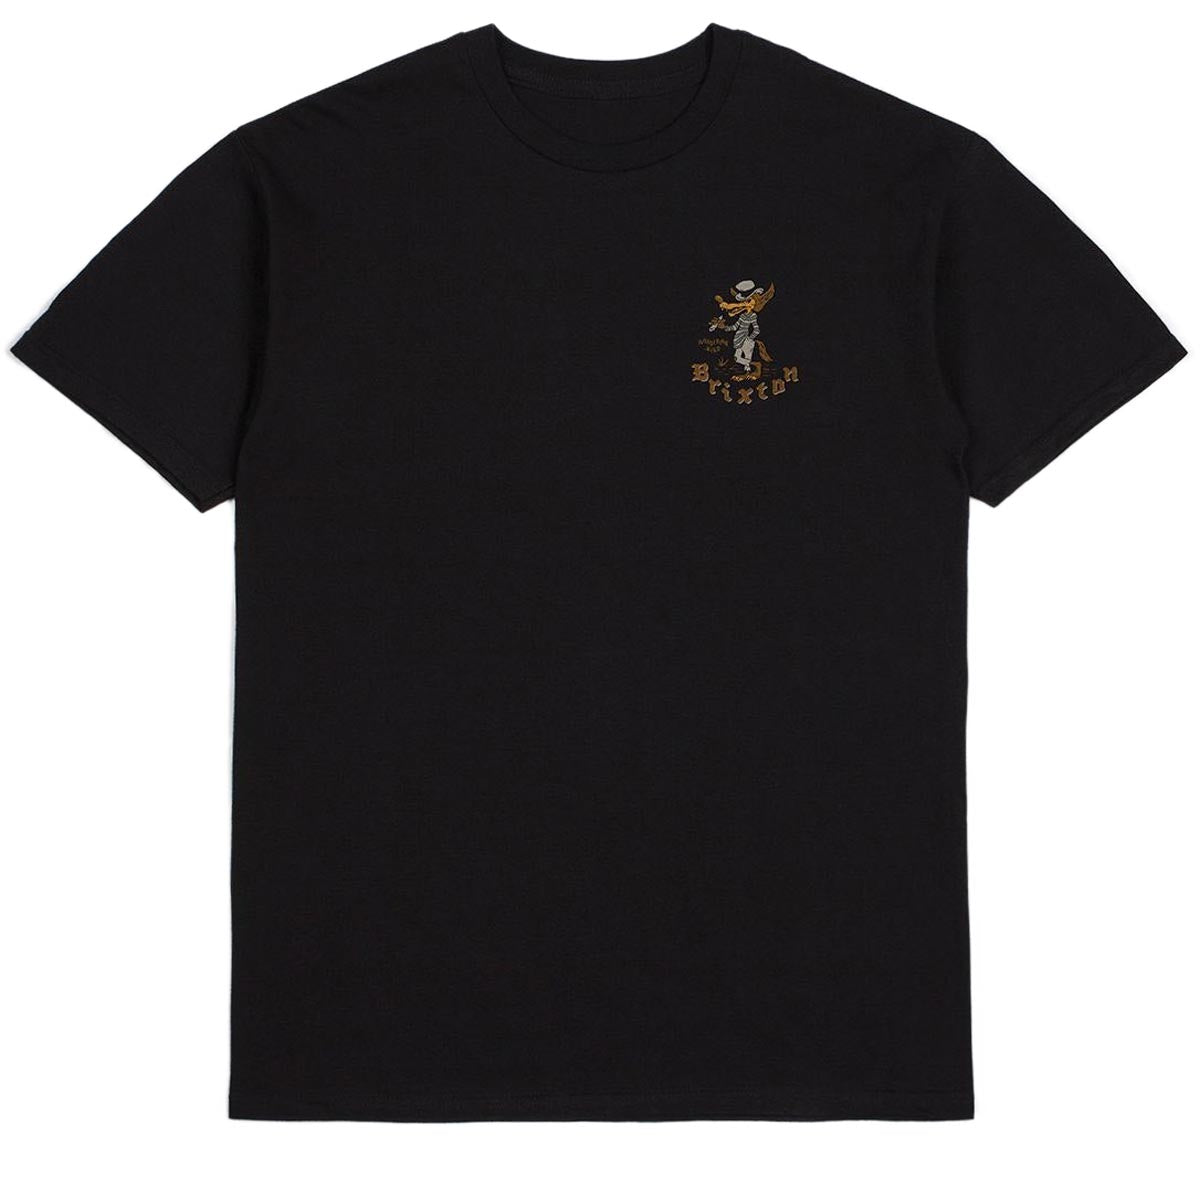 Brixton Oakwood T-Shirt - Black Worn Wash image 2